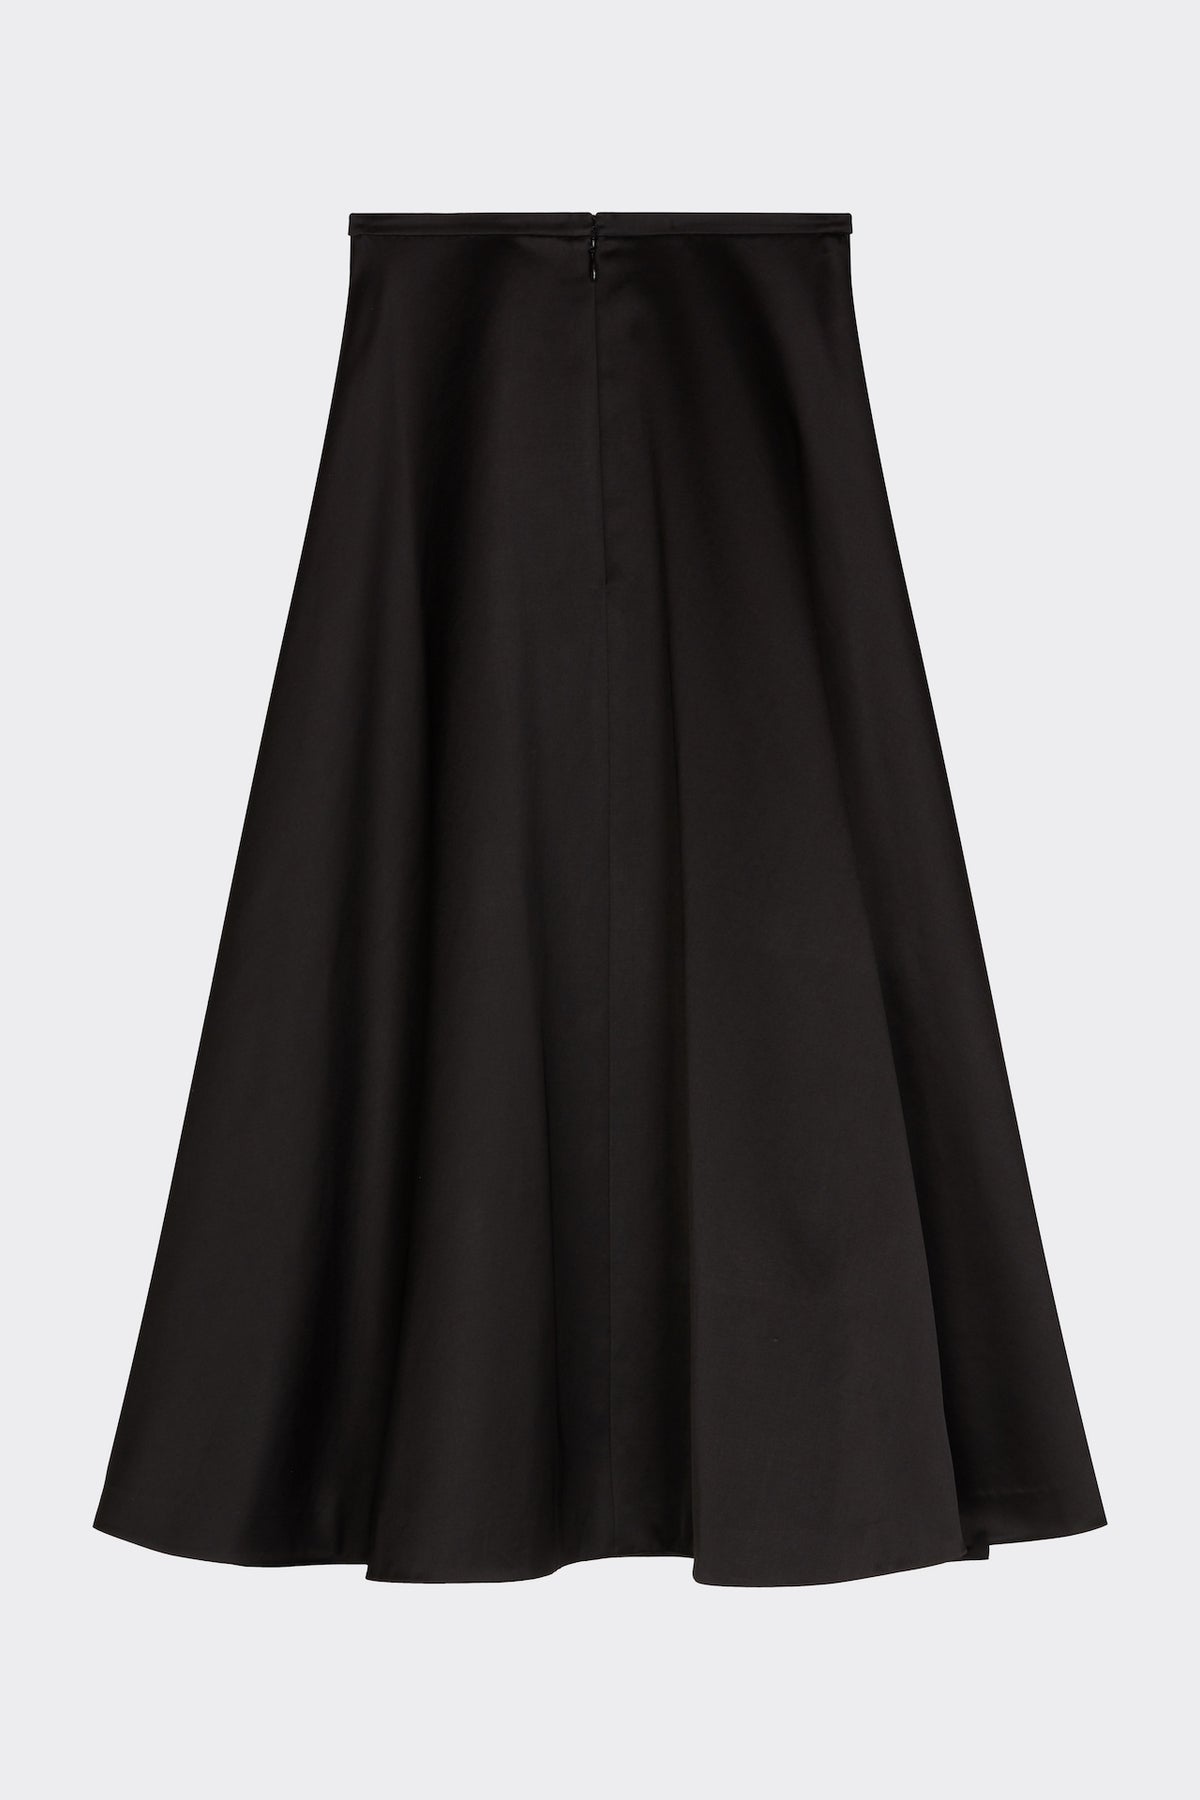 Hetty Skirt in Black | Noon By Noor